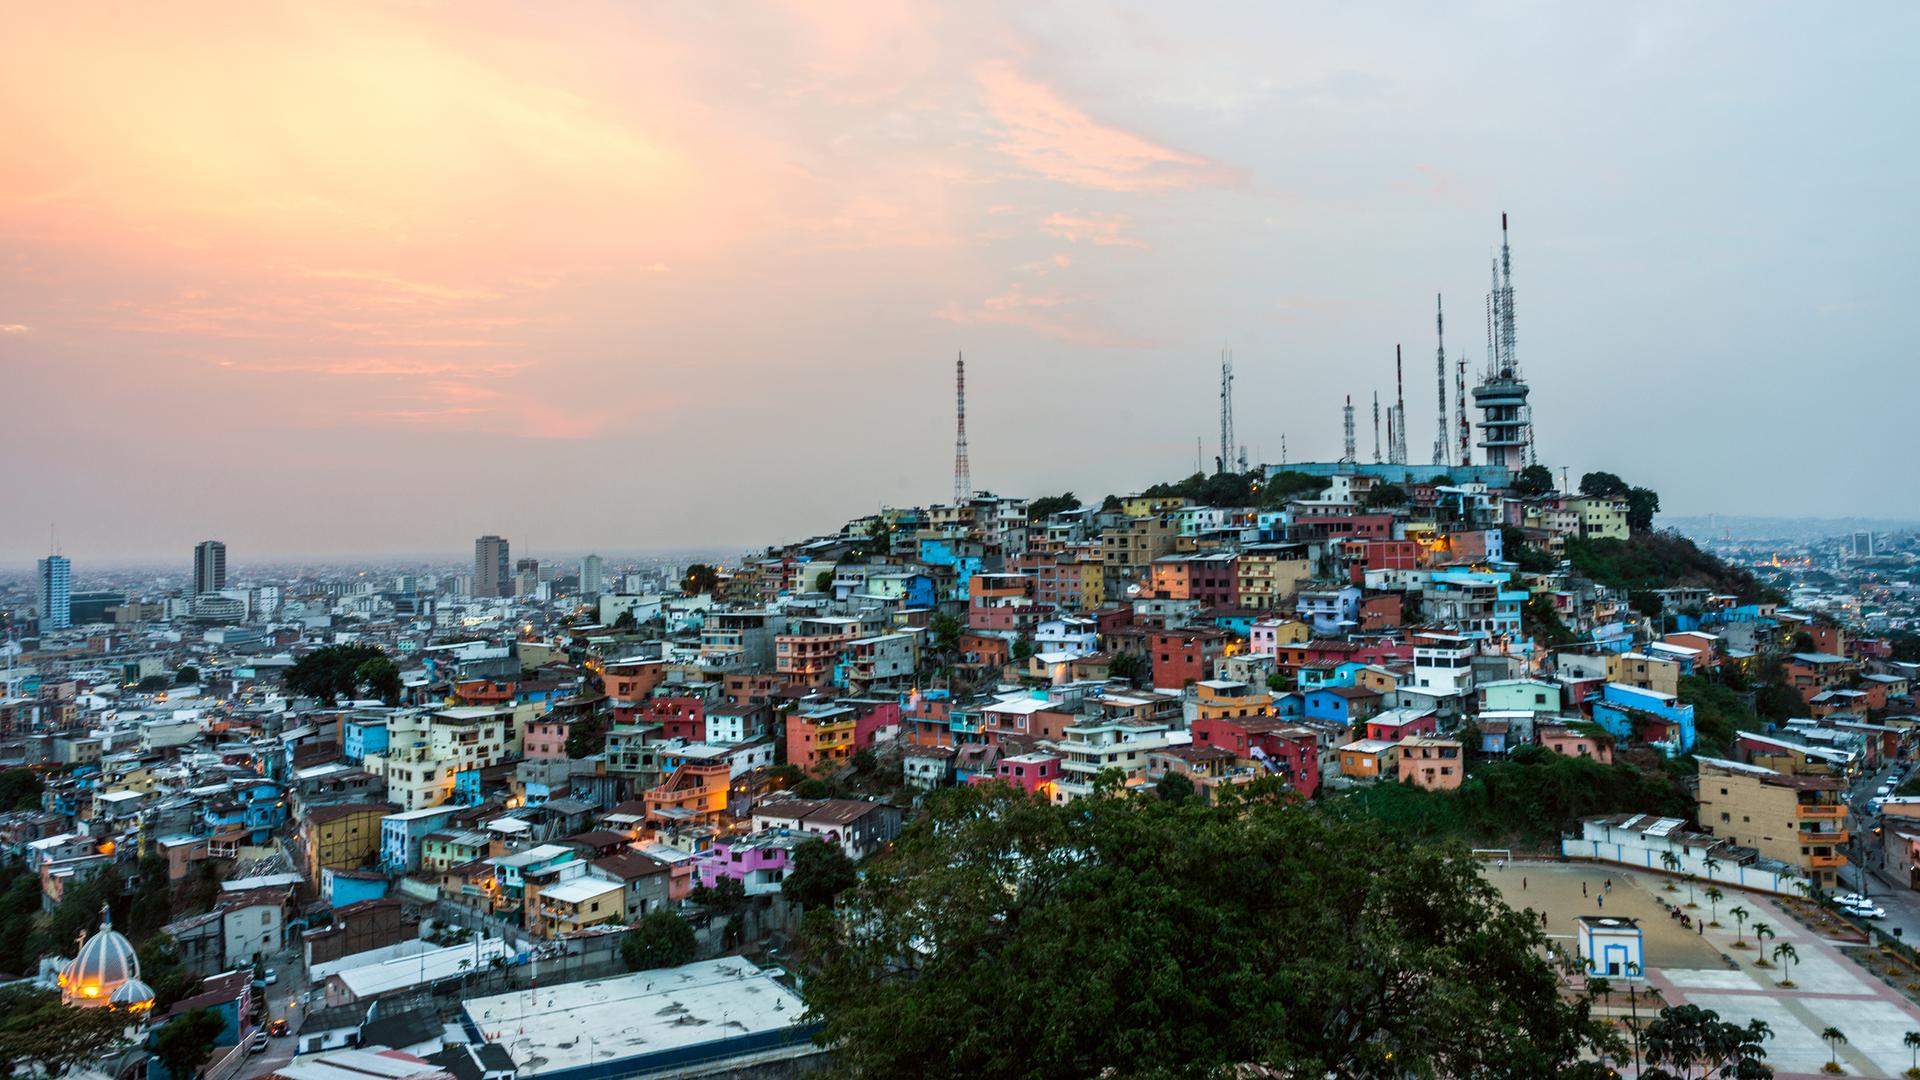 Ein Panoramablick auf Guayaquil, die größte Stadt Ecuadors. Man sieht viele farbige Häuser auf einem Berg.